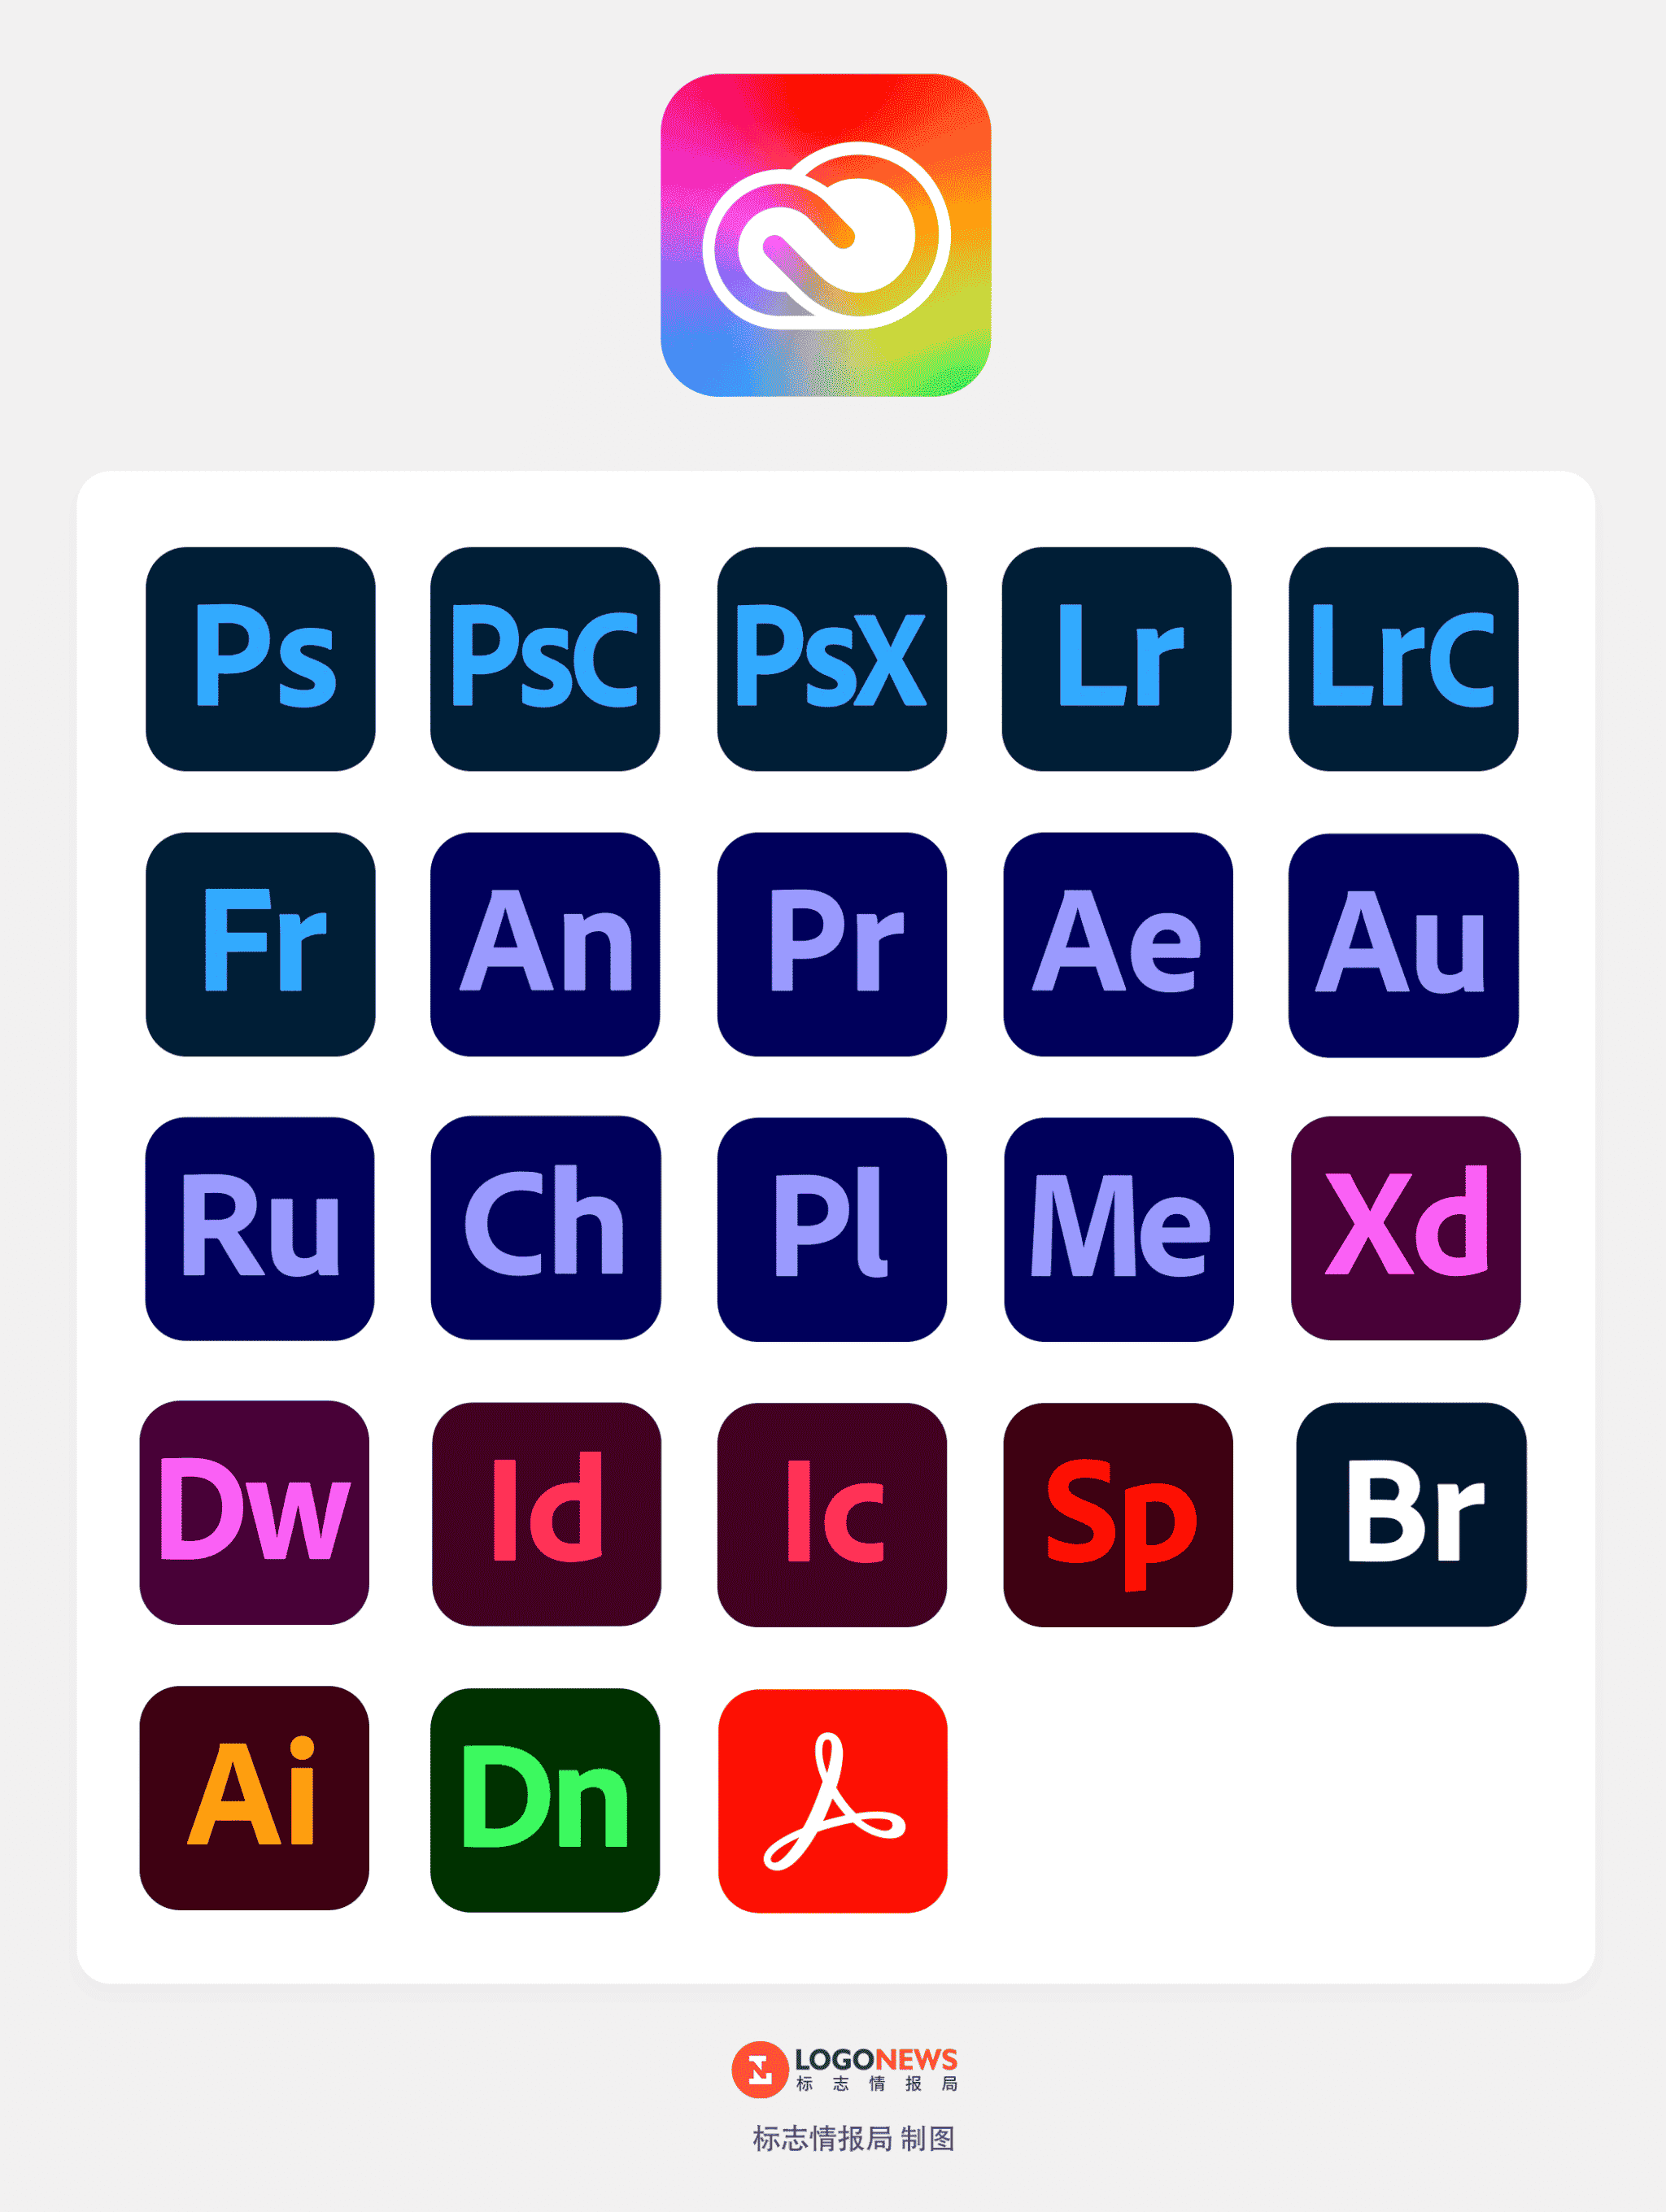 Adobe 旗下產品Ps、Ai、Ae..全部換新標！ 色彩變得更統一 7